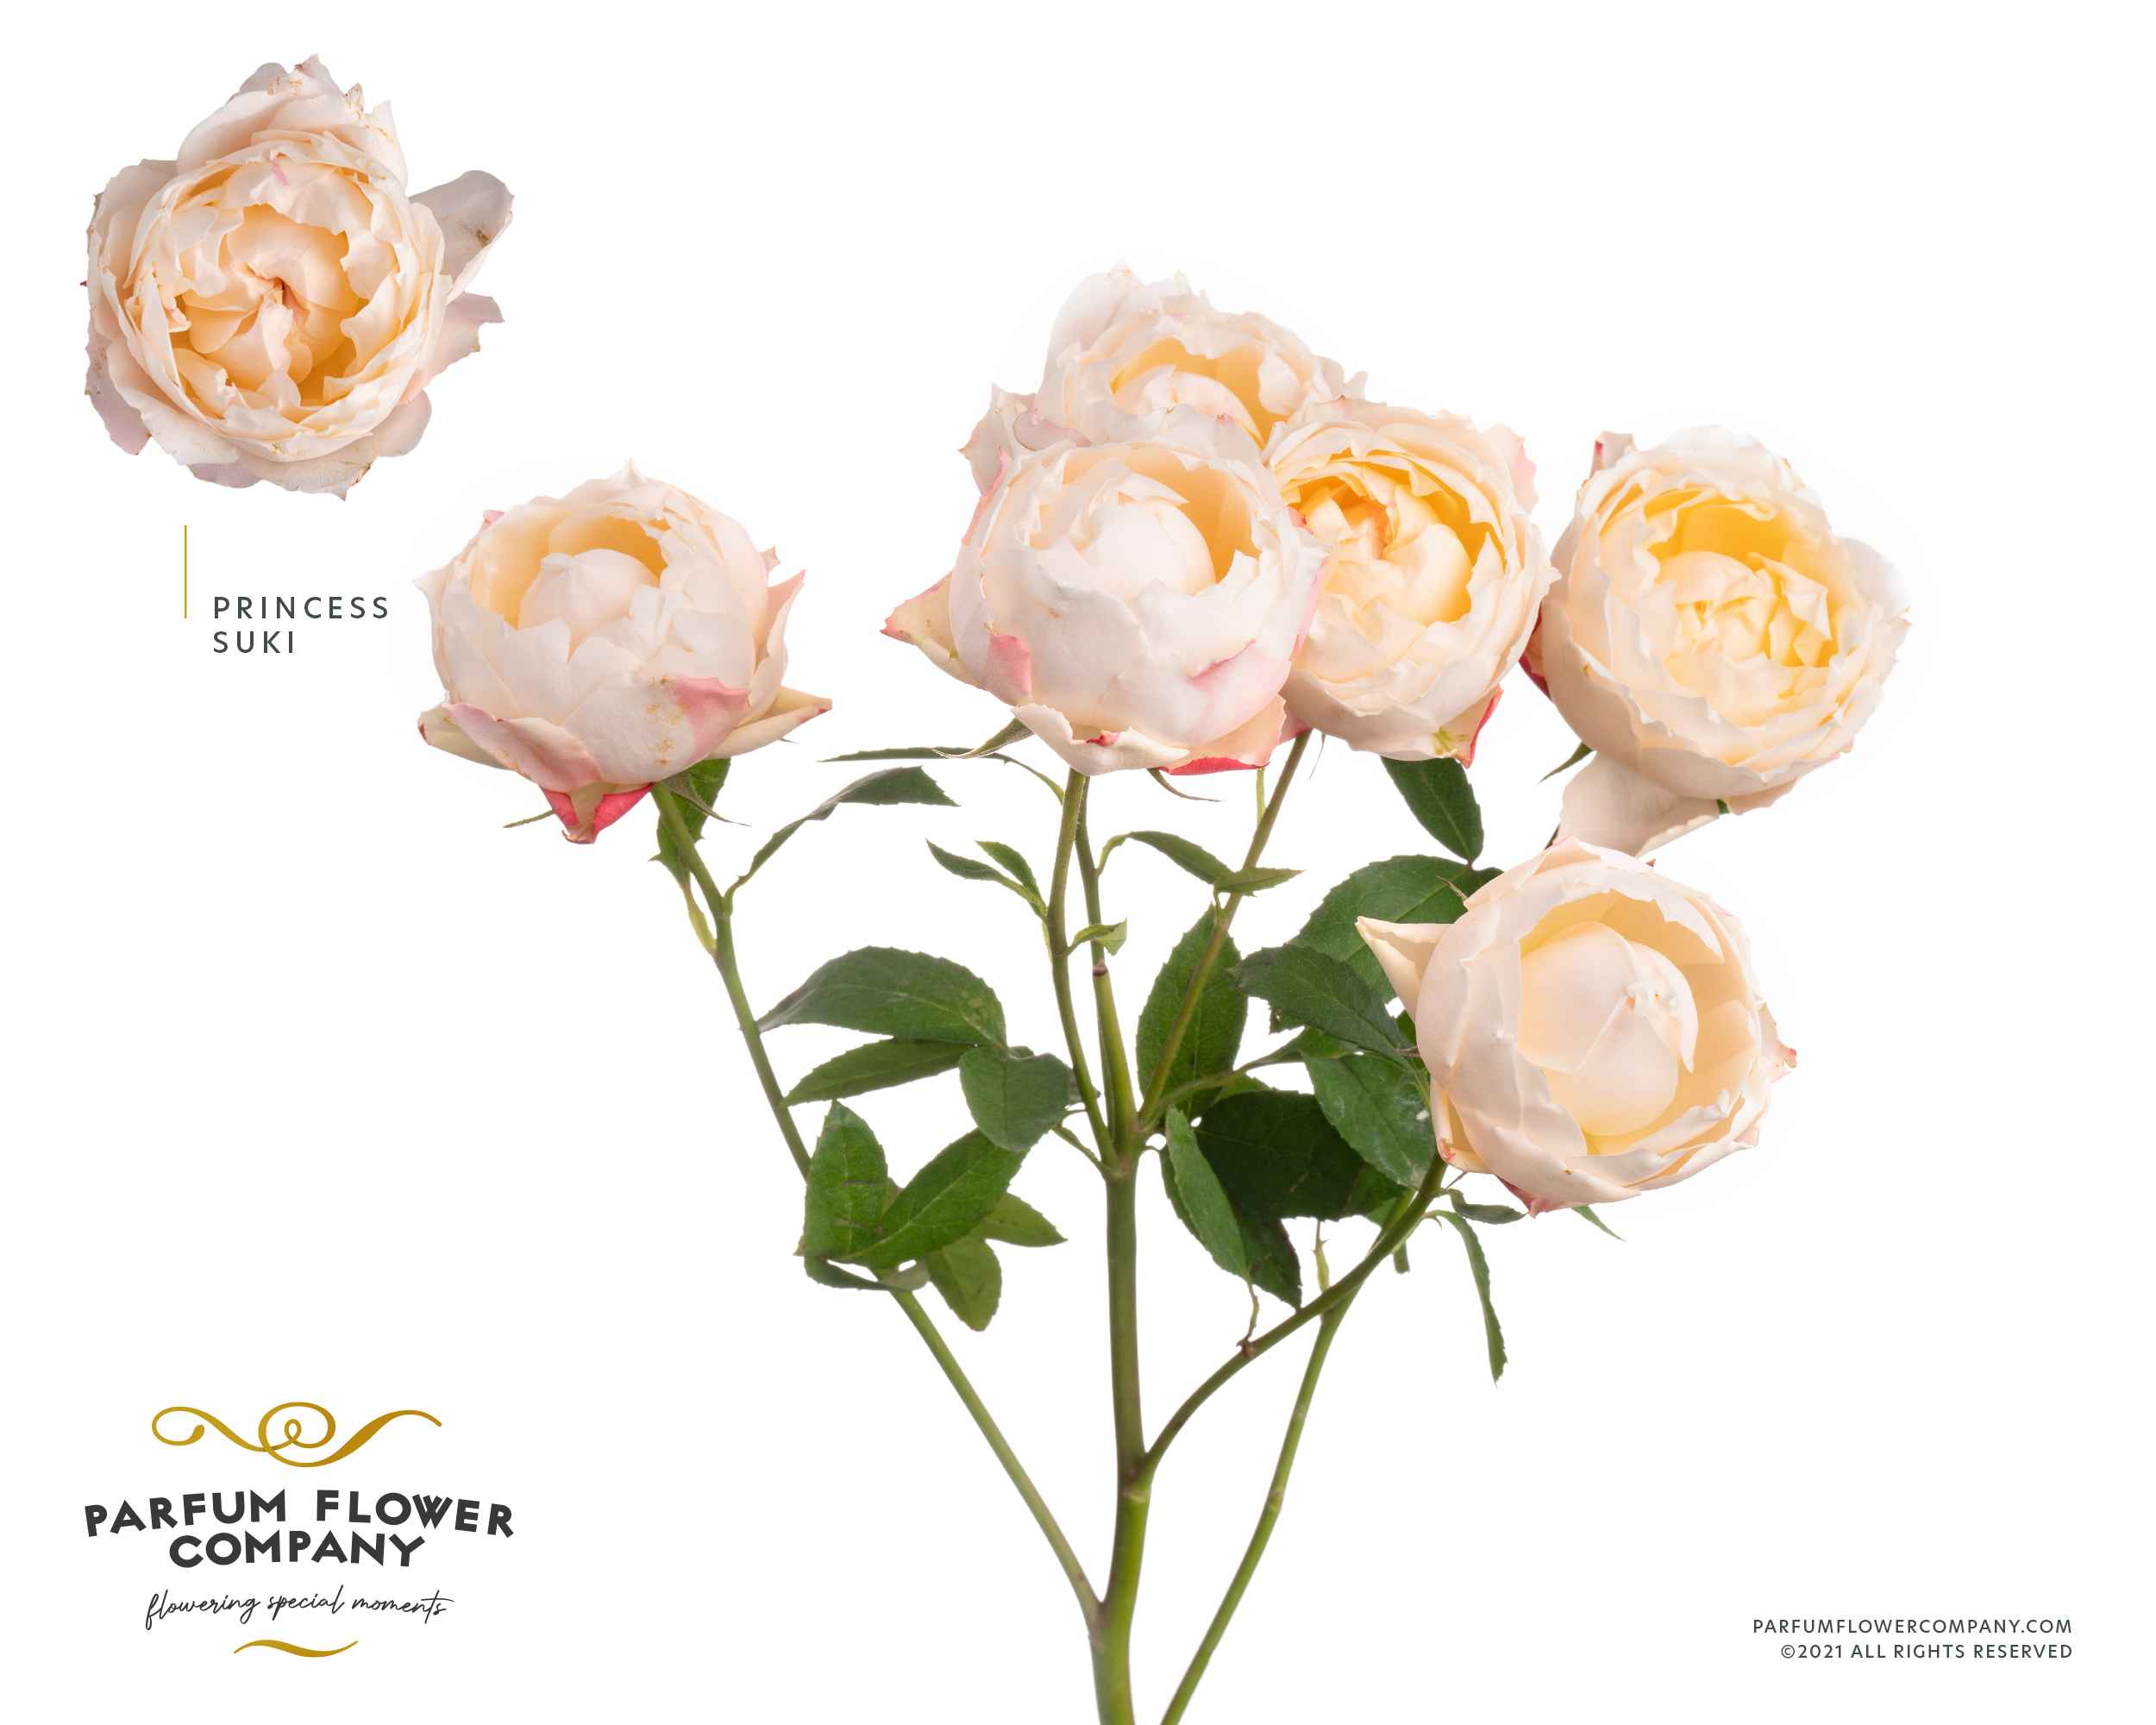 Срезанные цветы оптом Rosa sp garden princess suki от 24шт из Голландии с доставкой по России